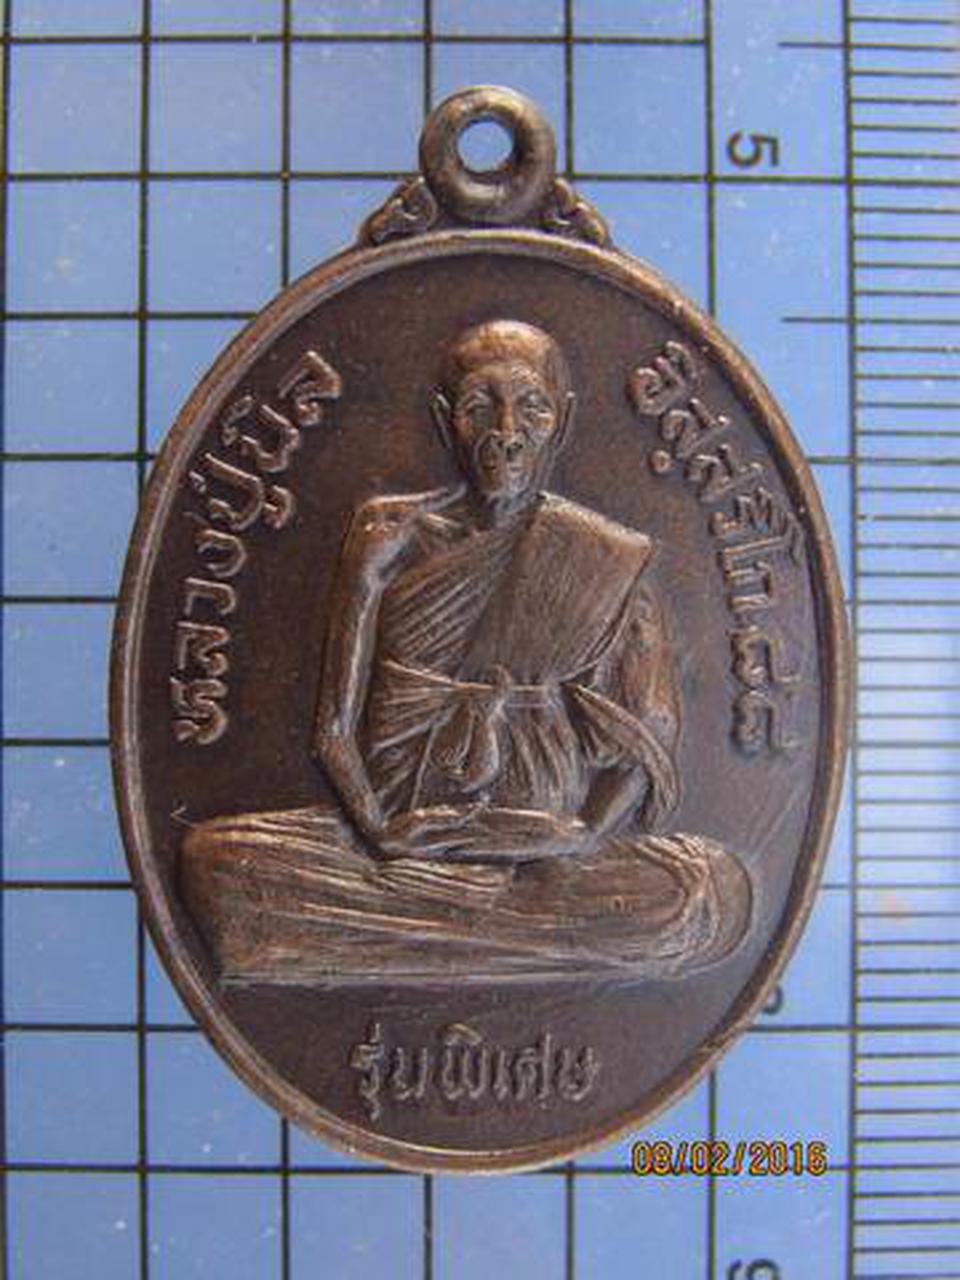 3113 เหรียญหลวงปู่นิล วัดครบุรี ปี 2533 รุ่นพิเศษ มนต์ พลญาณ